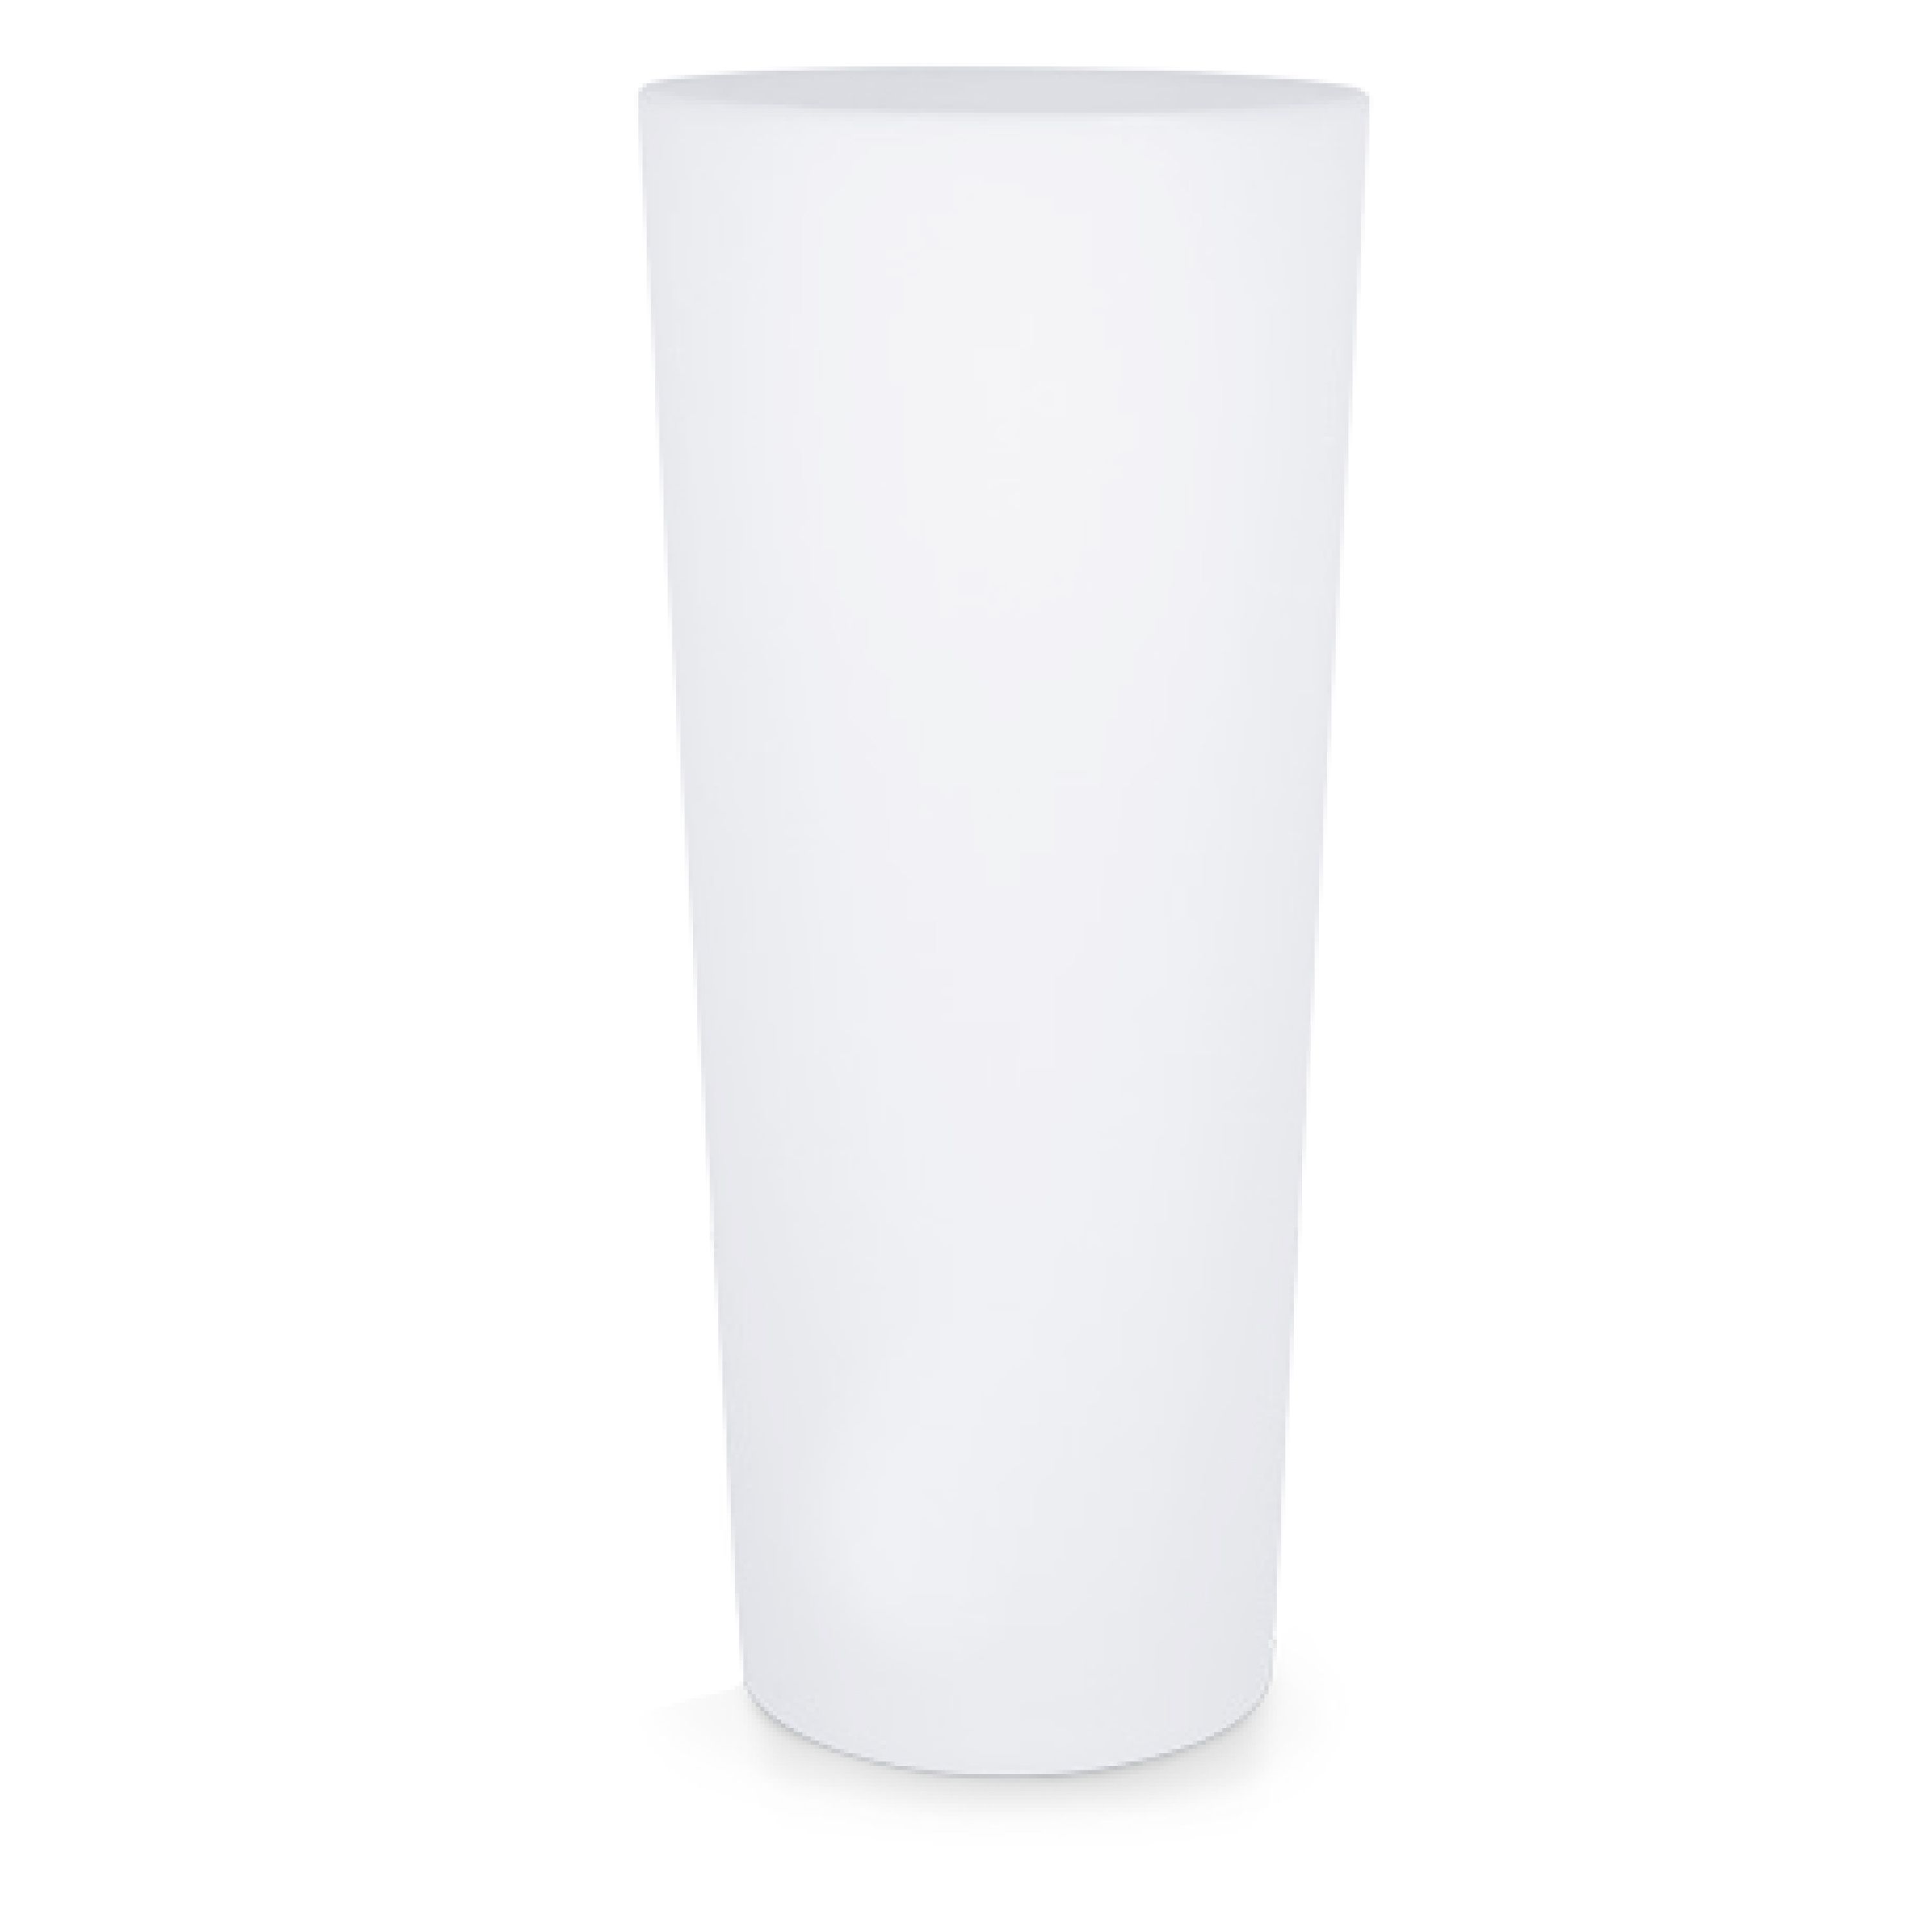 Polyethylene lumineux vase sined rotondo solar 86